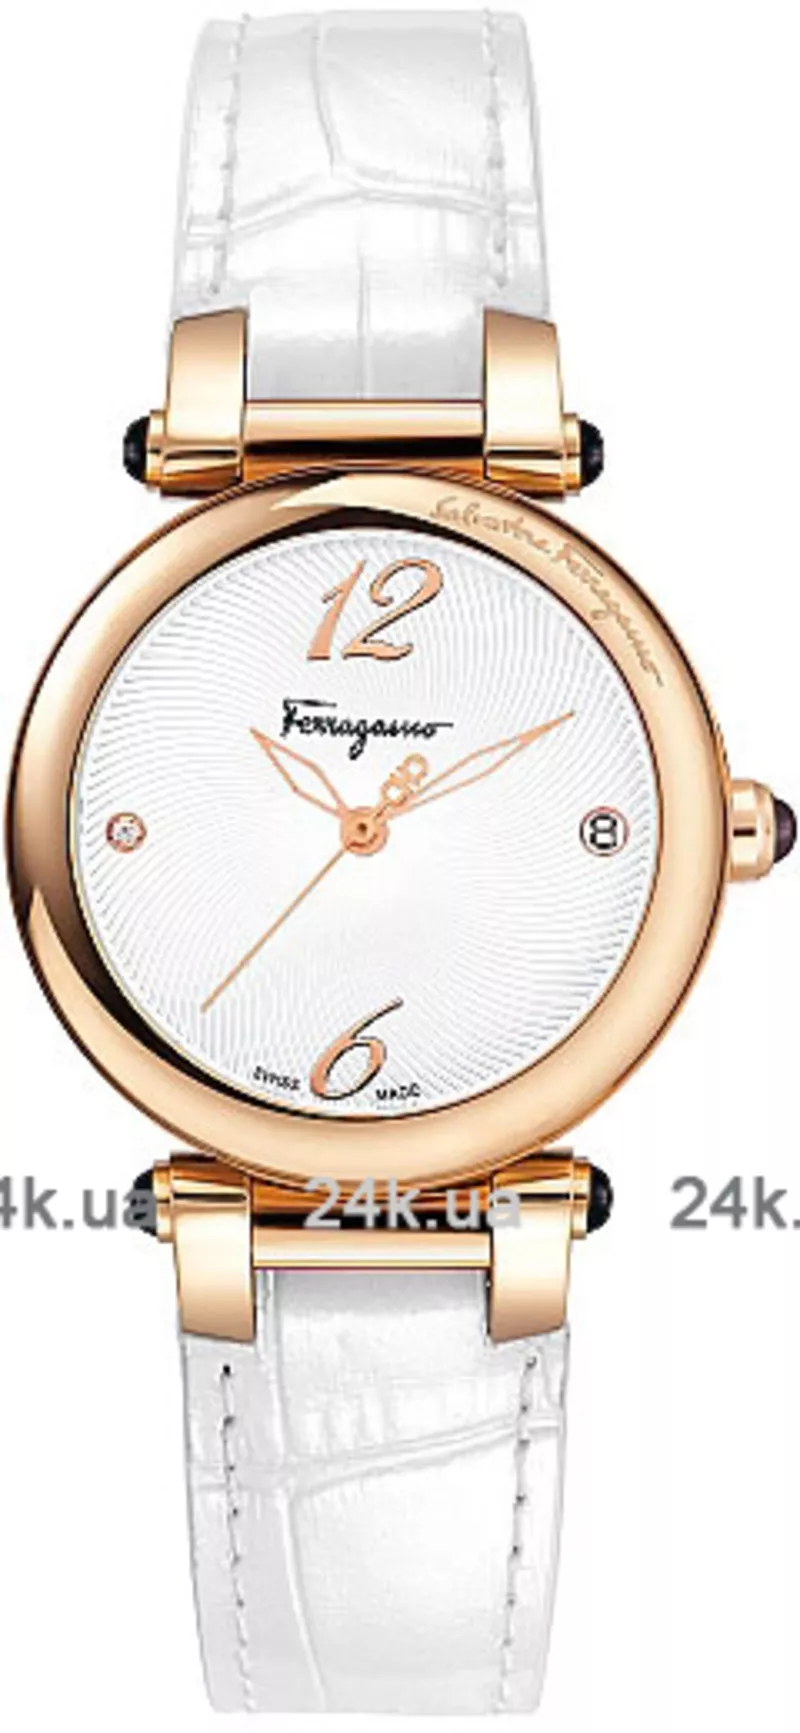 Часы Salvatore Ferragamo Fr76sbq5002 sb01